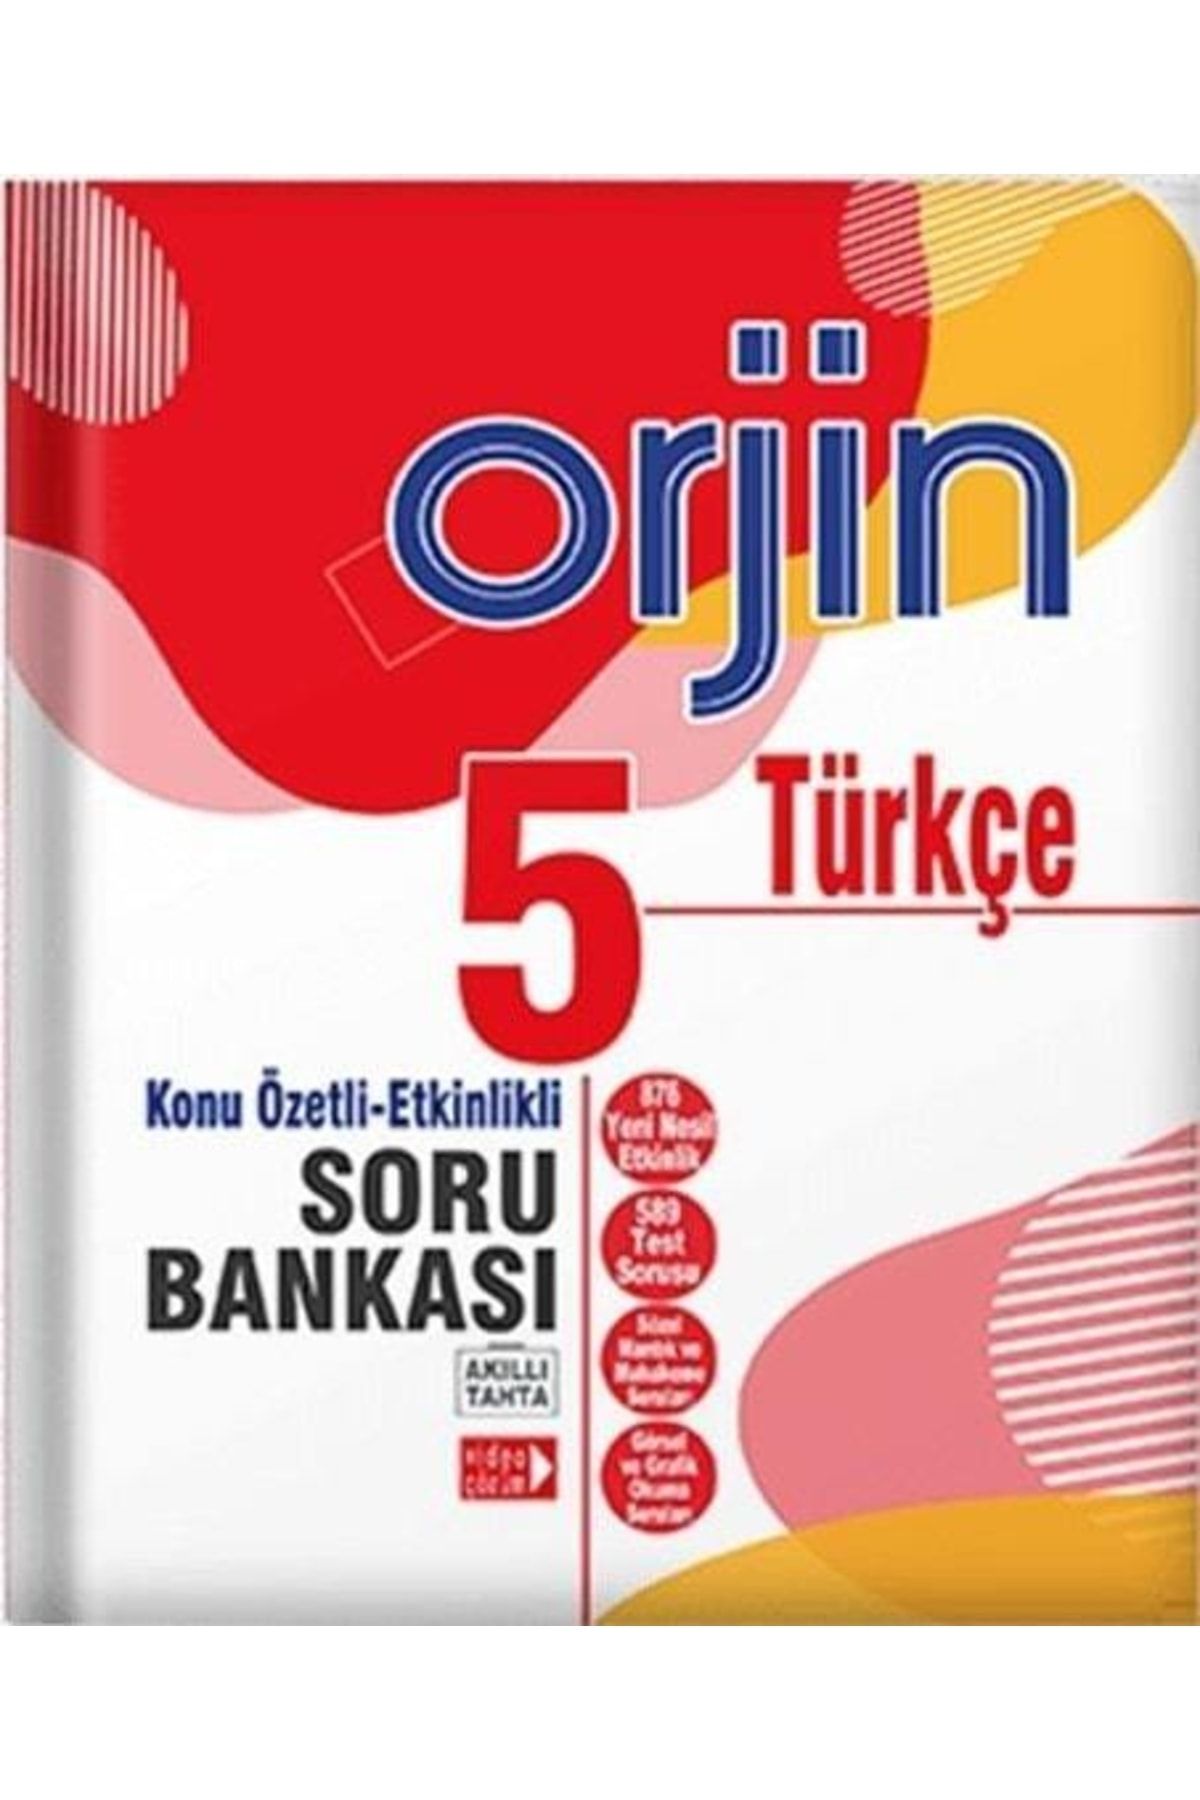 Gama Yayınları 5.sınıf Türkçe Orjin Konu Özetli Etkinlikli Soru Bankası